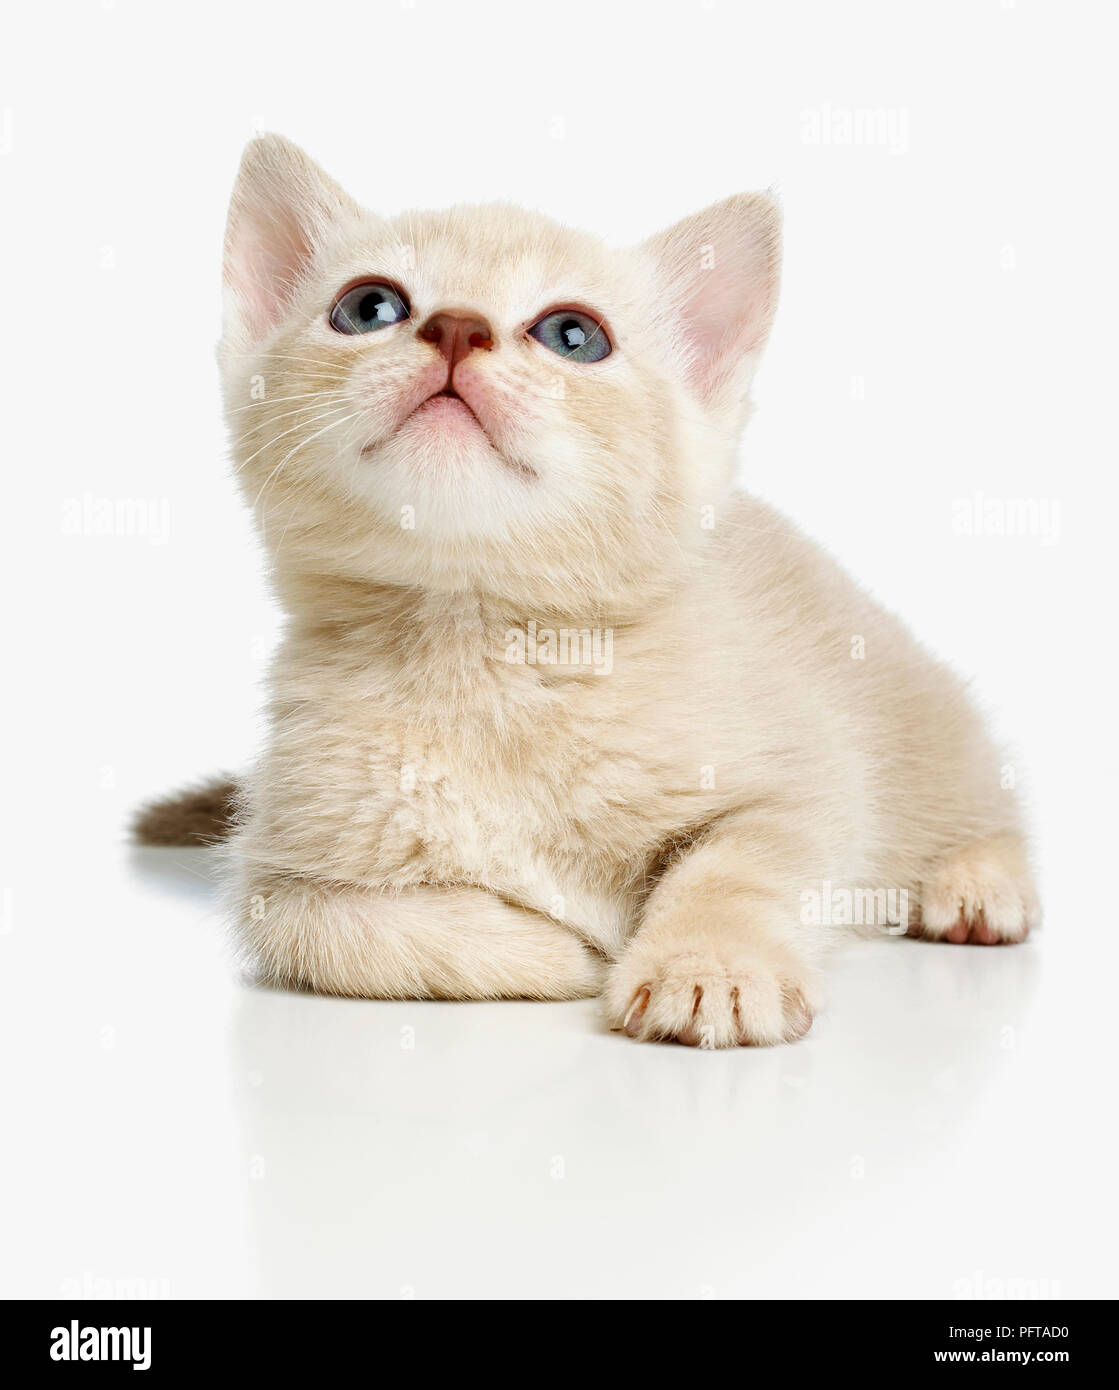 Burmese cross breed kitten Stock Photo